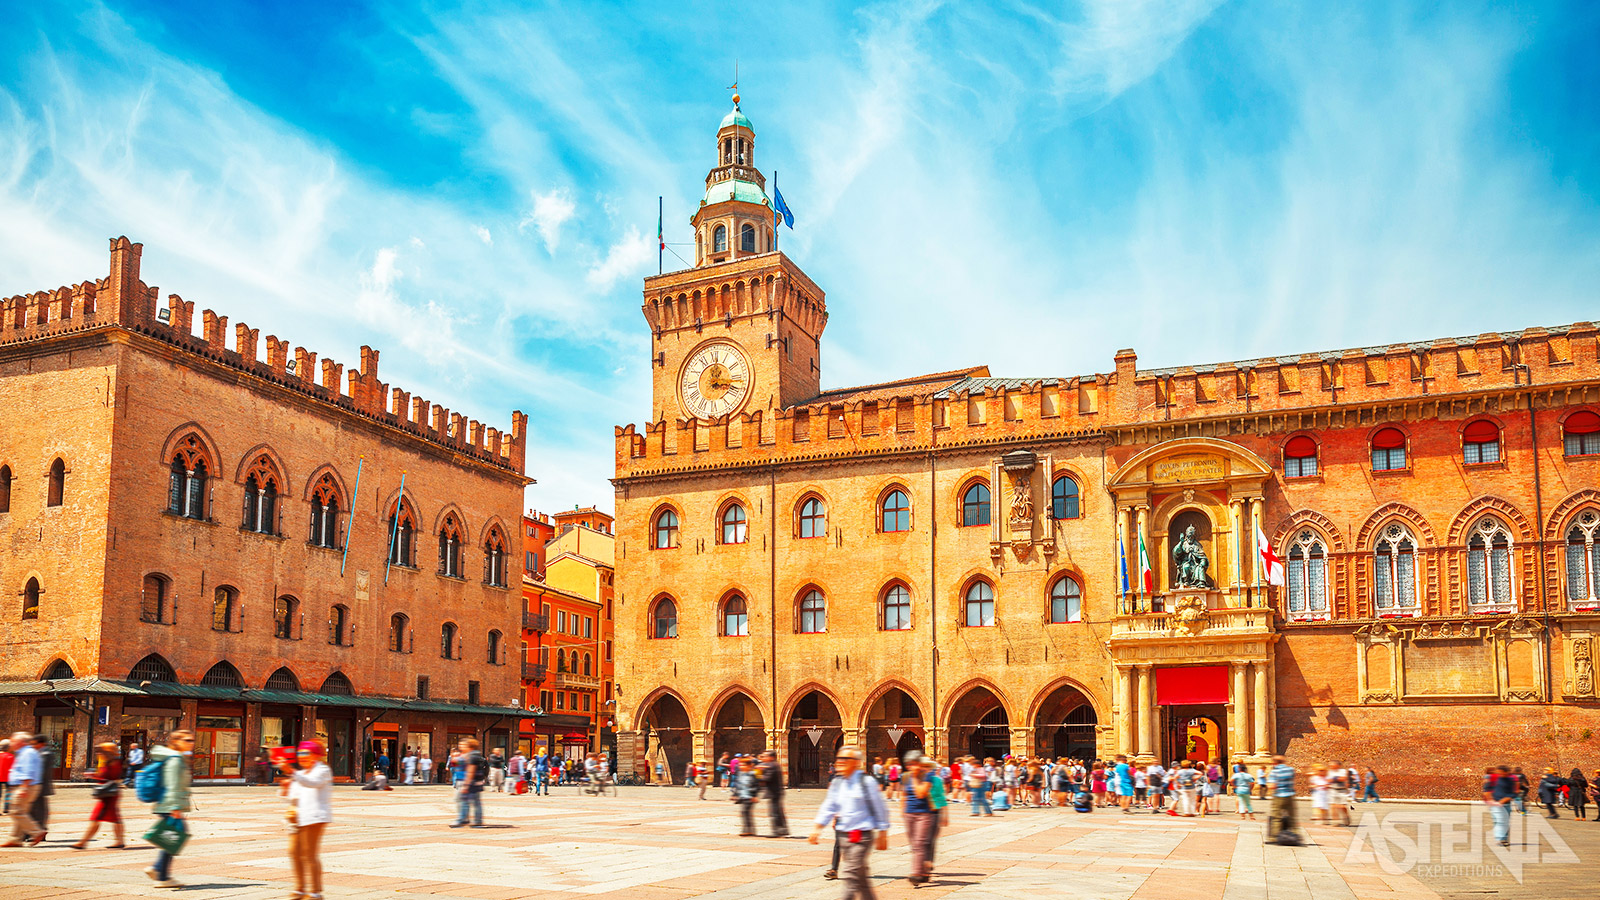 Het mooiste plein van Bologna is zonder twijfel Piazza Maggiore met zijn impossante bouwwerken